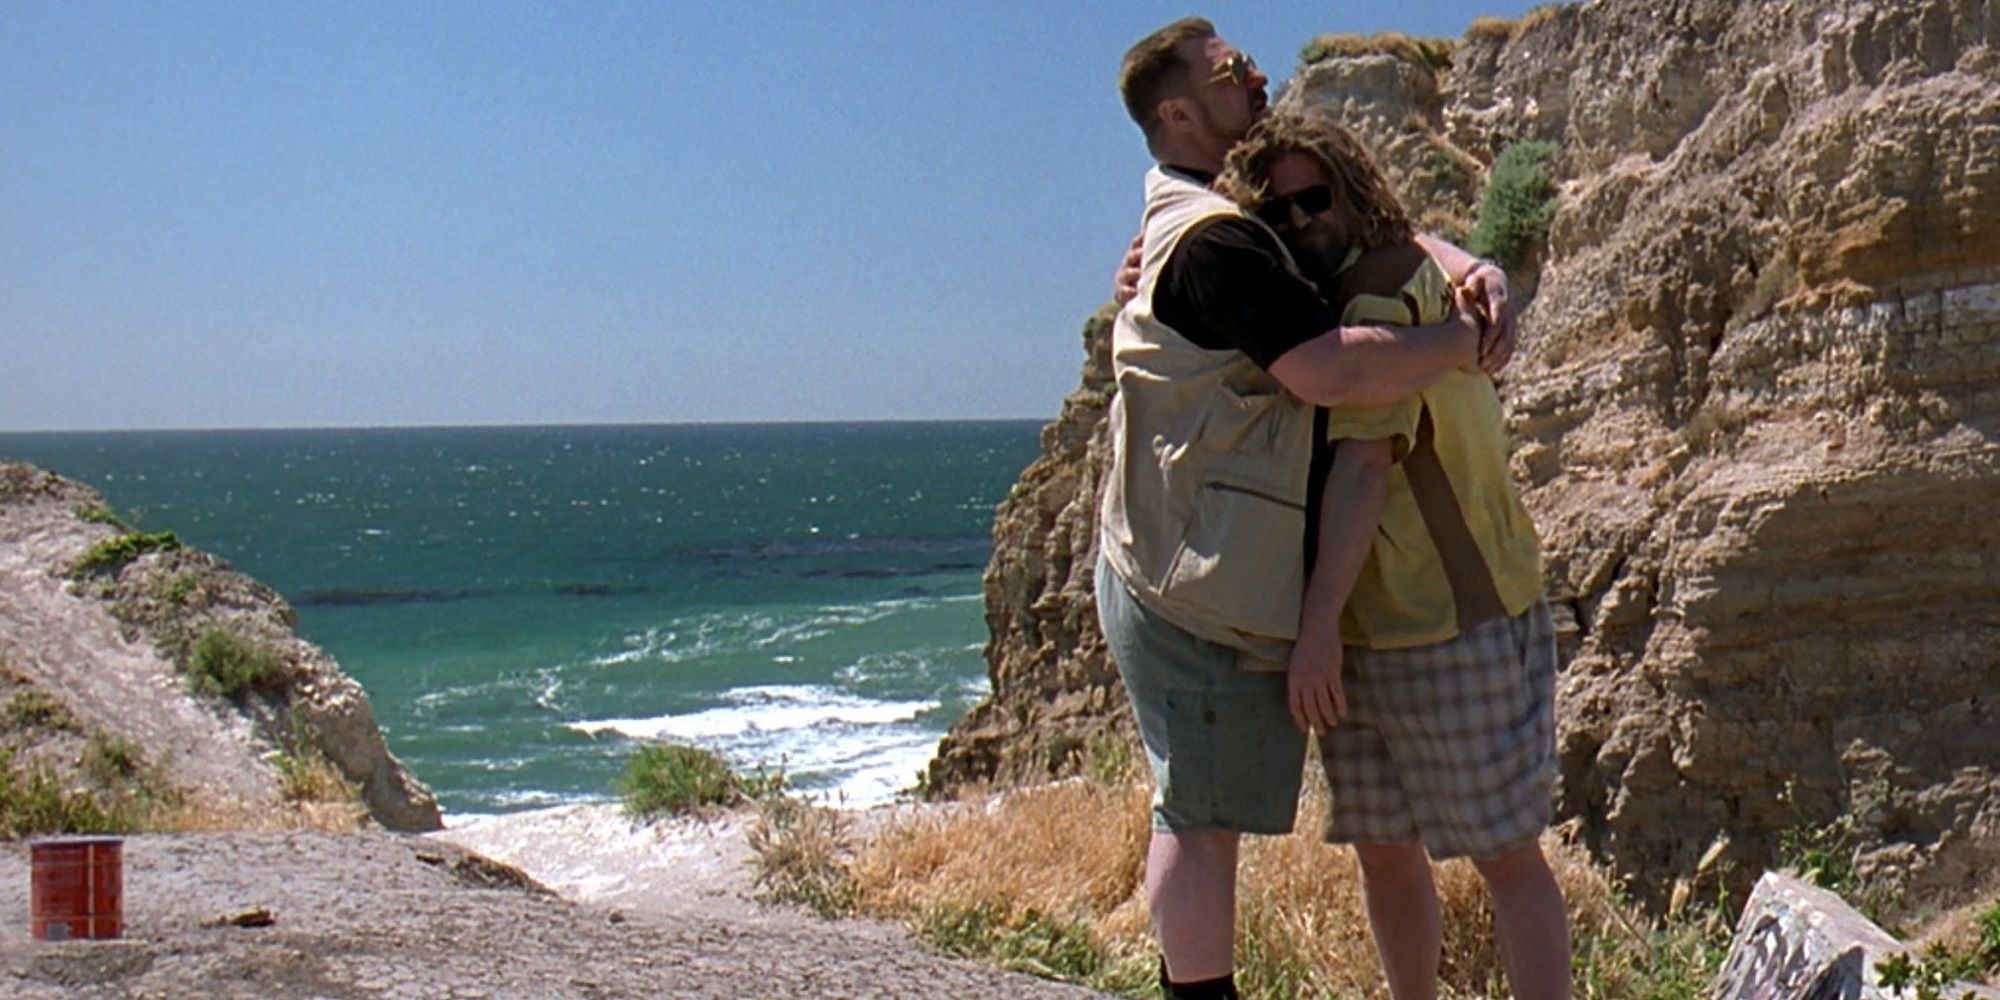 Walter abraça o Cara na praia em The Big Lebowski